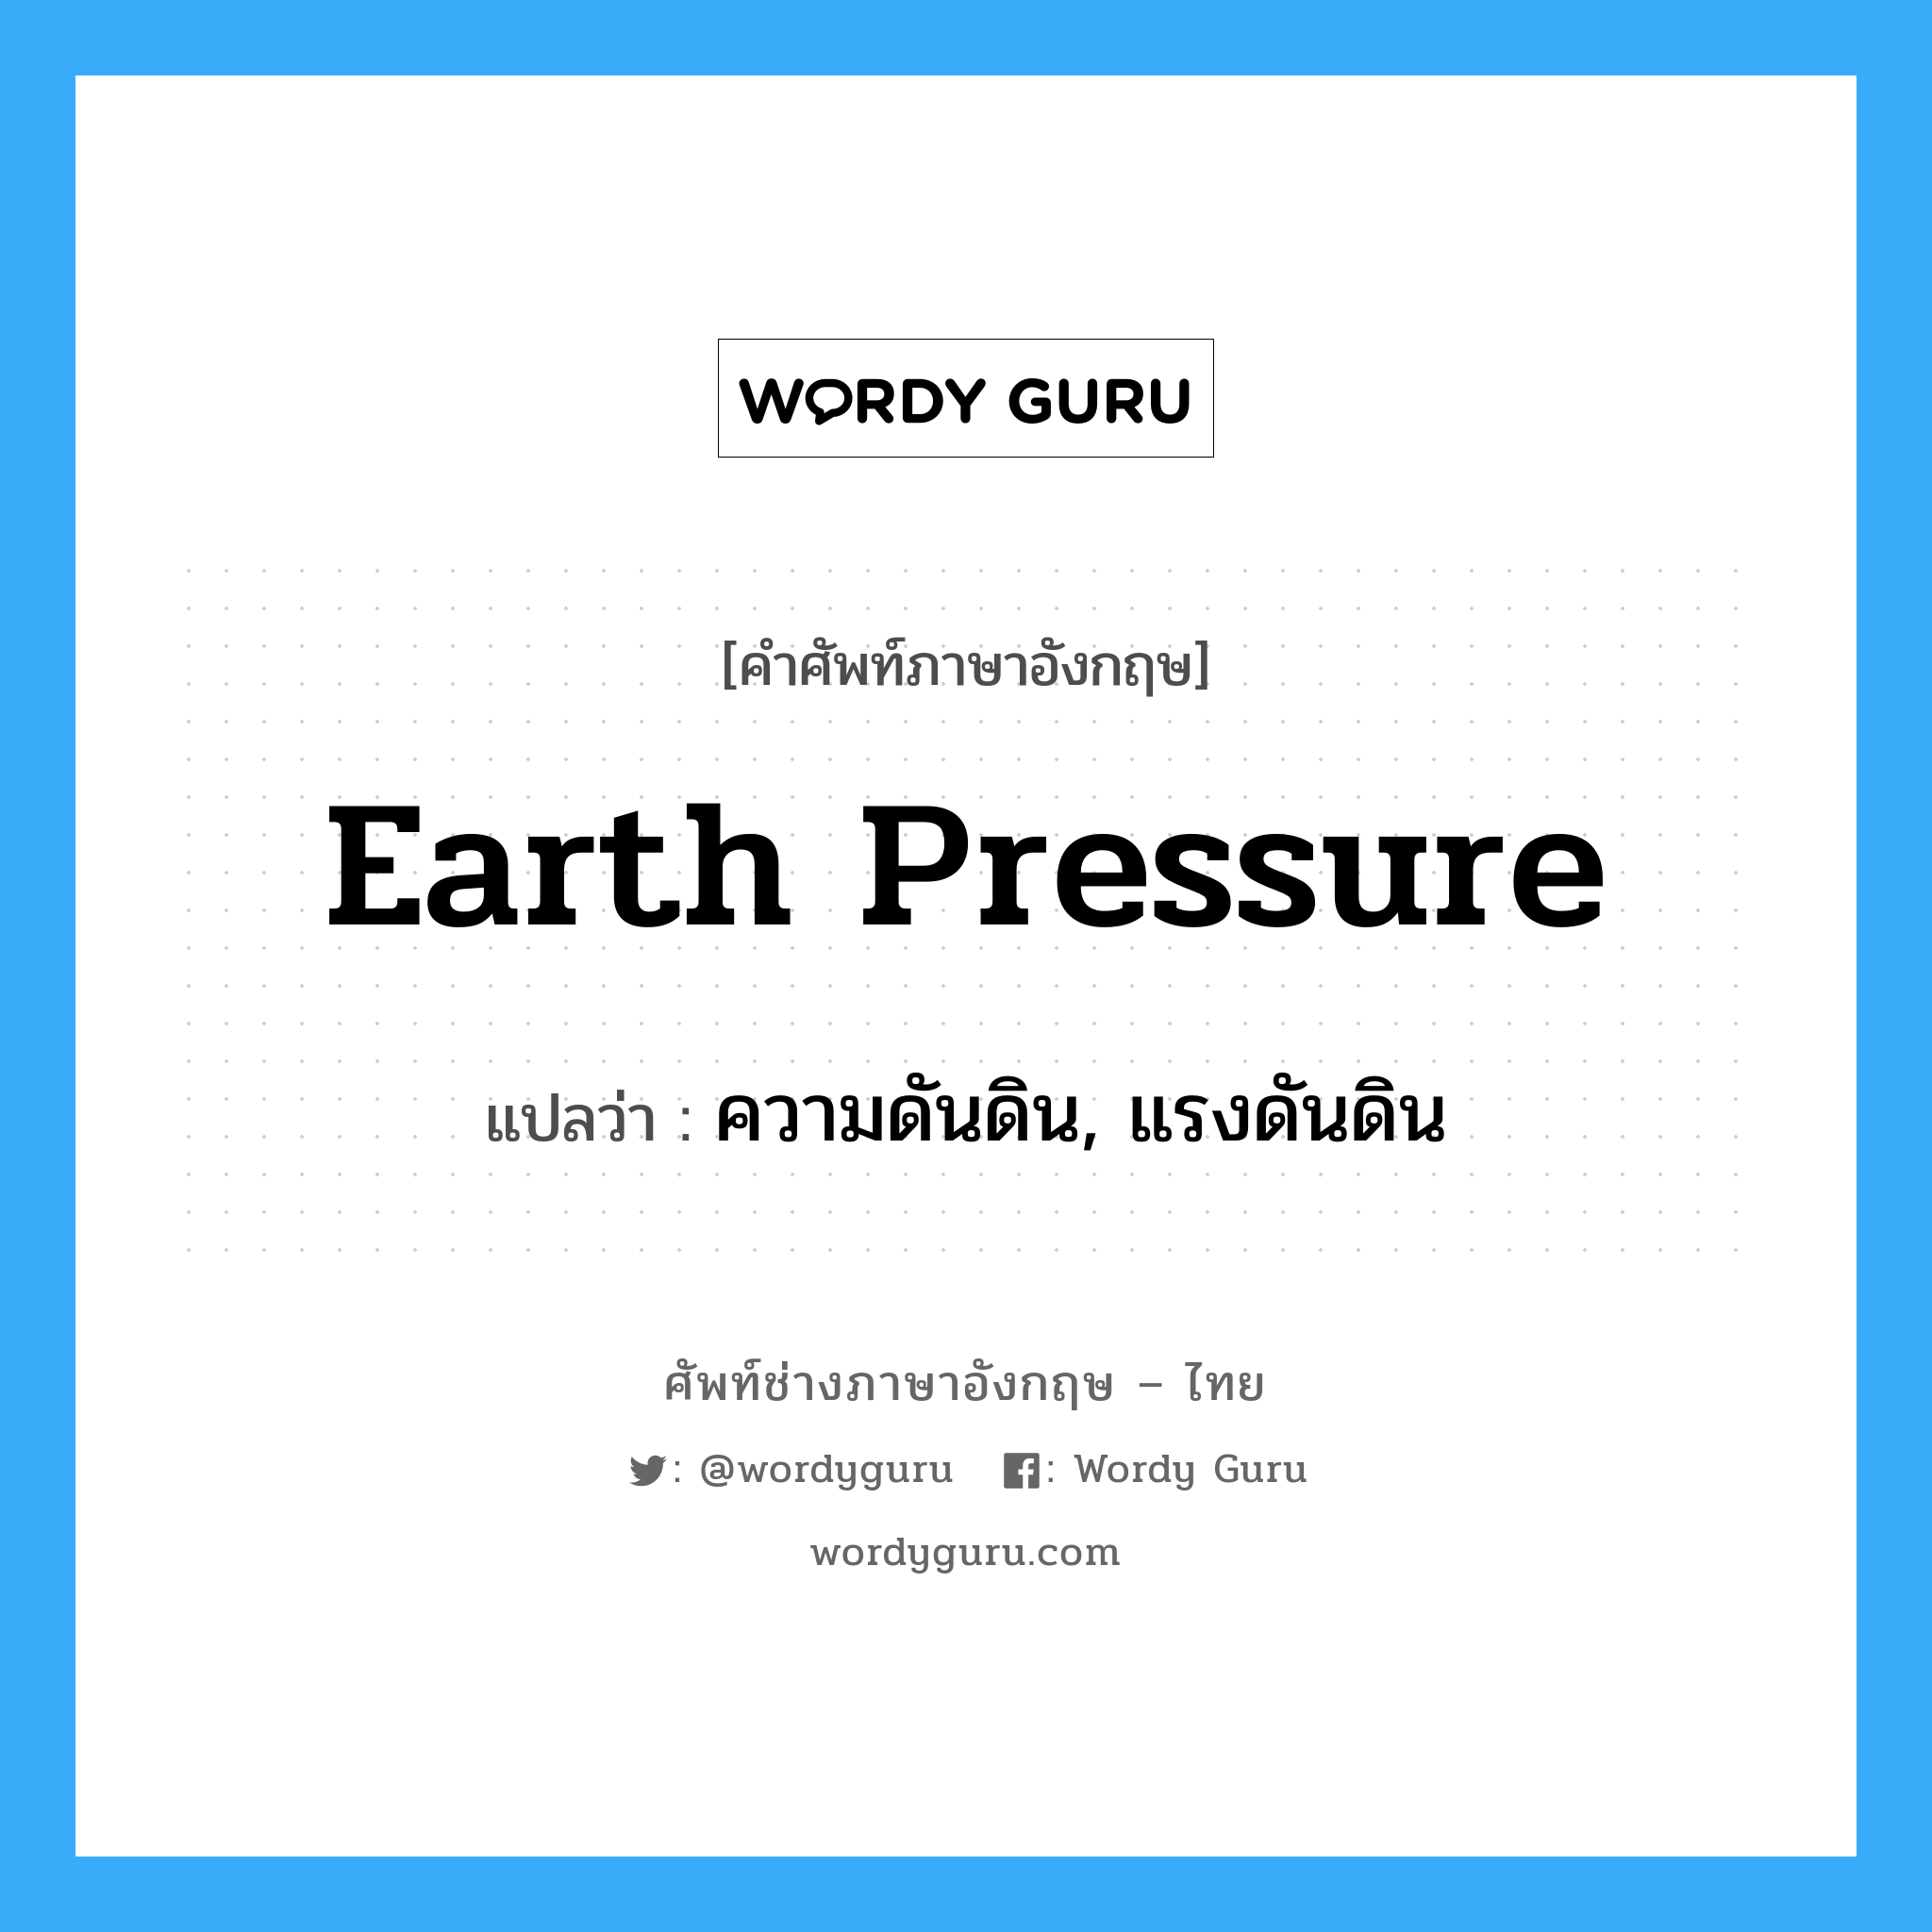 ความดันดิน, แรงดันดิน ภาษาอังกฤษ?, คำศัพท์ช่างภาษาอังกฤษ - ไทย ความดันดิน, แรงดันดิน คำศัพท์ภาษาอังกฤษ ความดันดิน, แรงดันดิน แปลว่า earth pressure